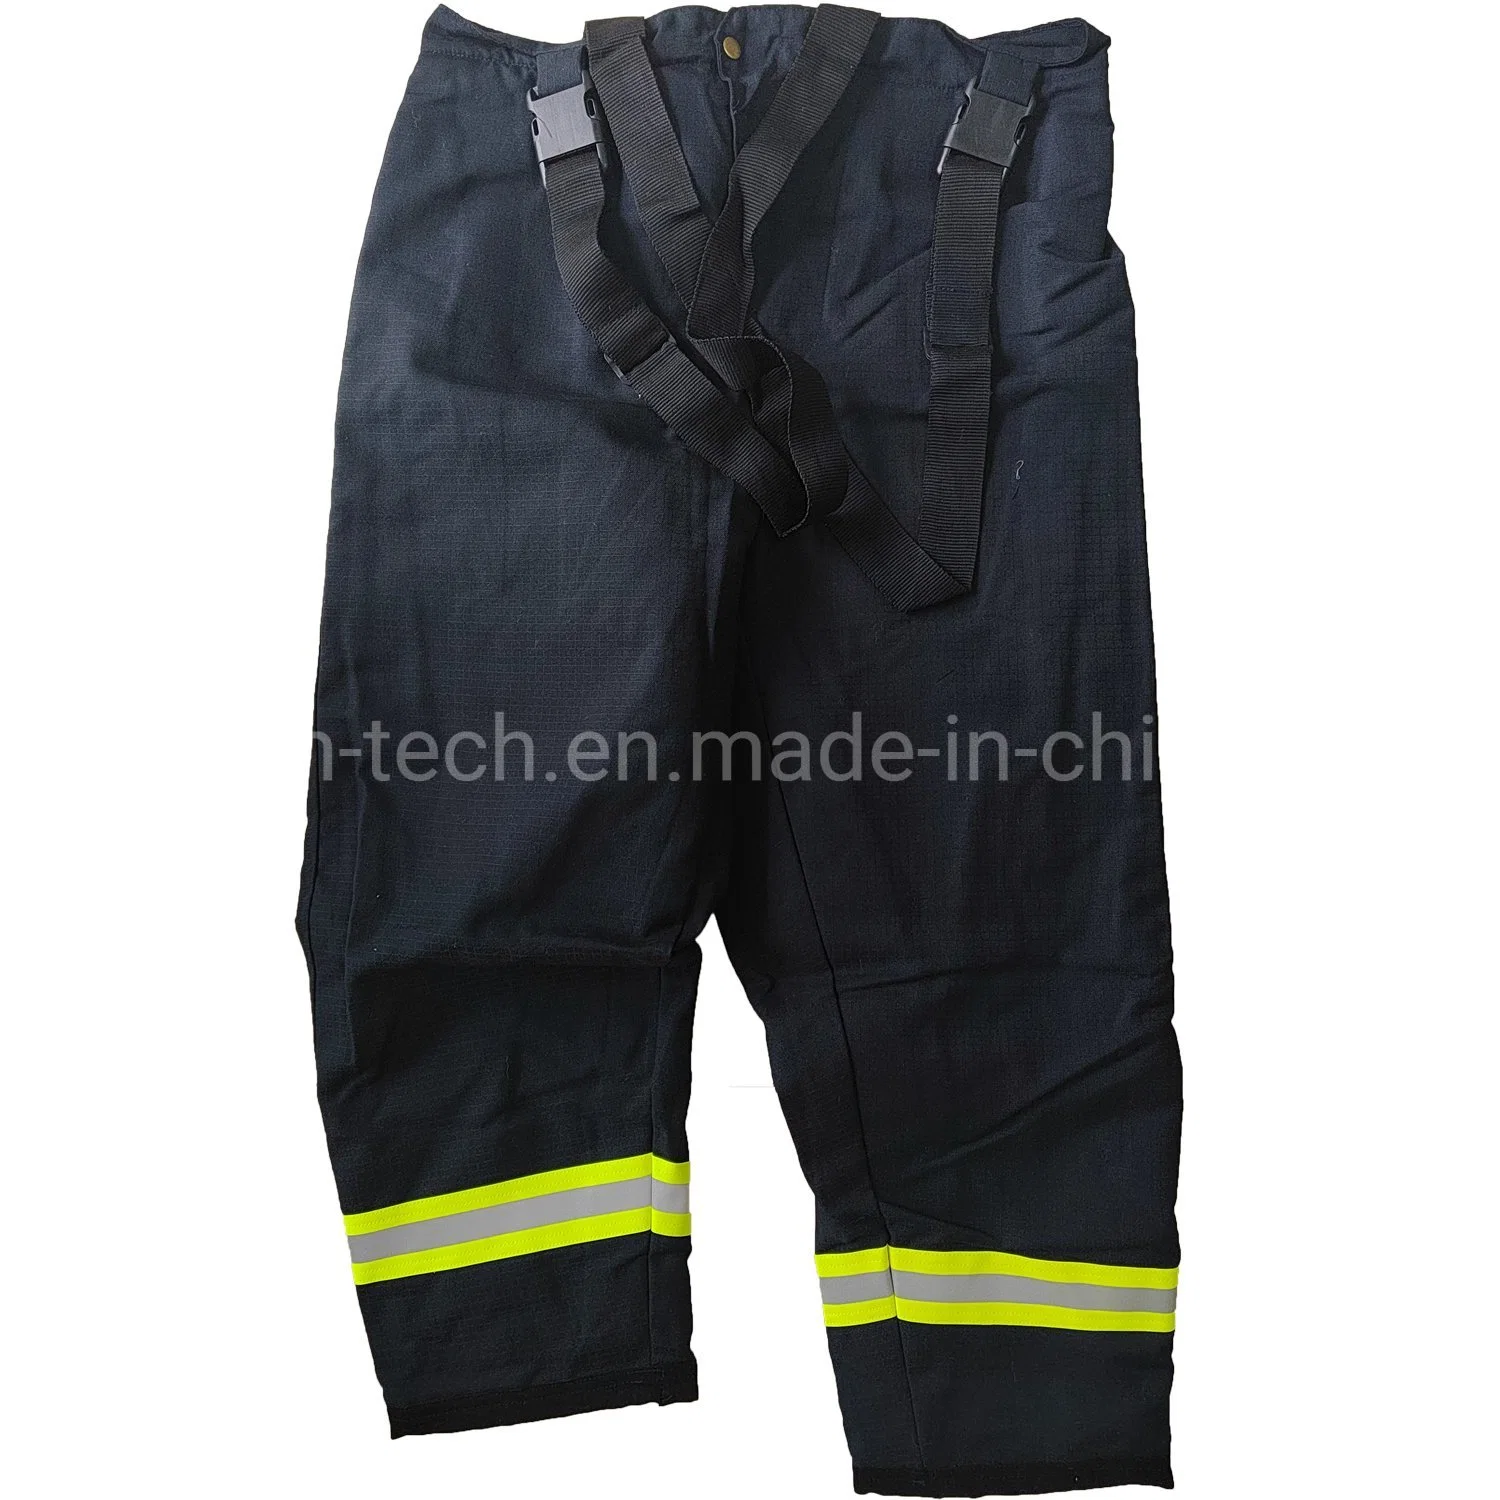 Структурных пожарных пожарной костюм постоянного негорючий материал защитную одежду для пожарных